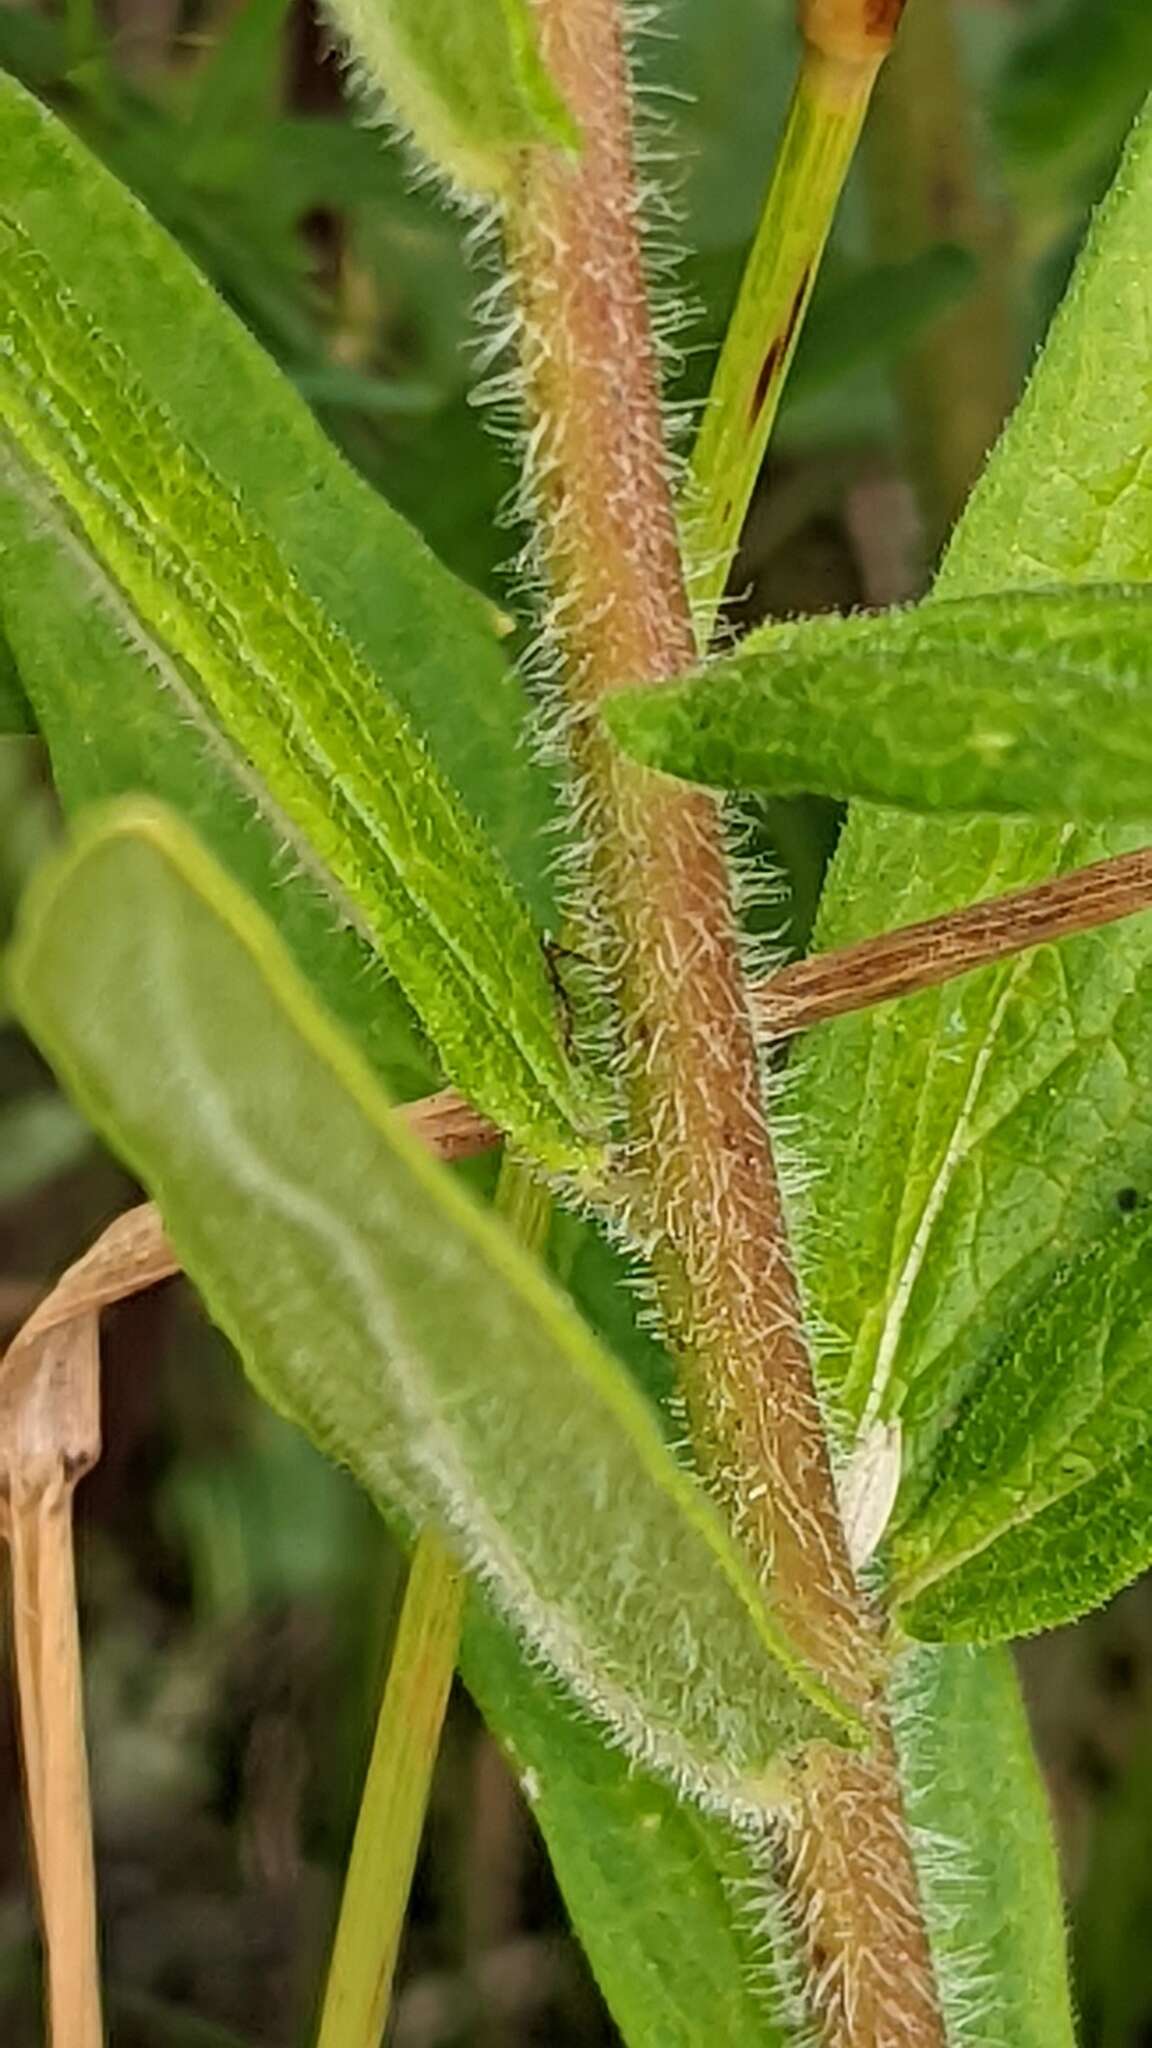 Image of butterfly milkweed